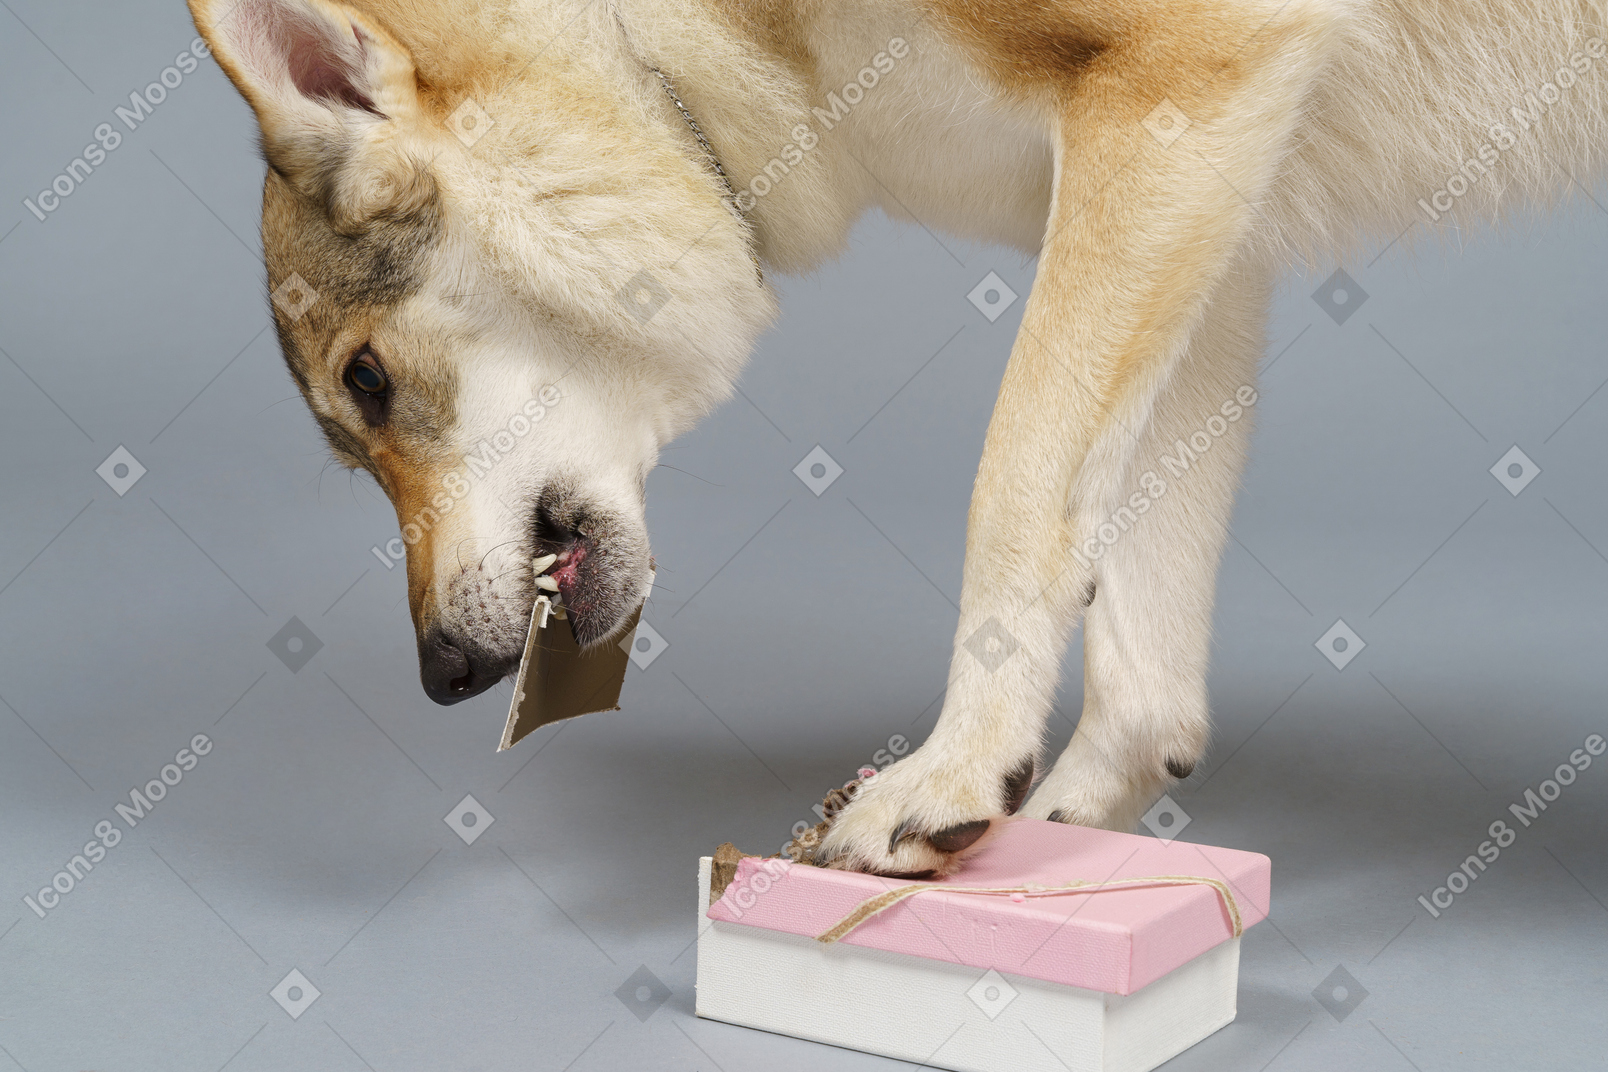 箱の中から何かを探しているオオカミのような犬のクローズアップ